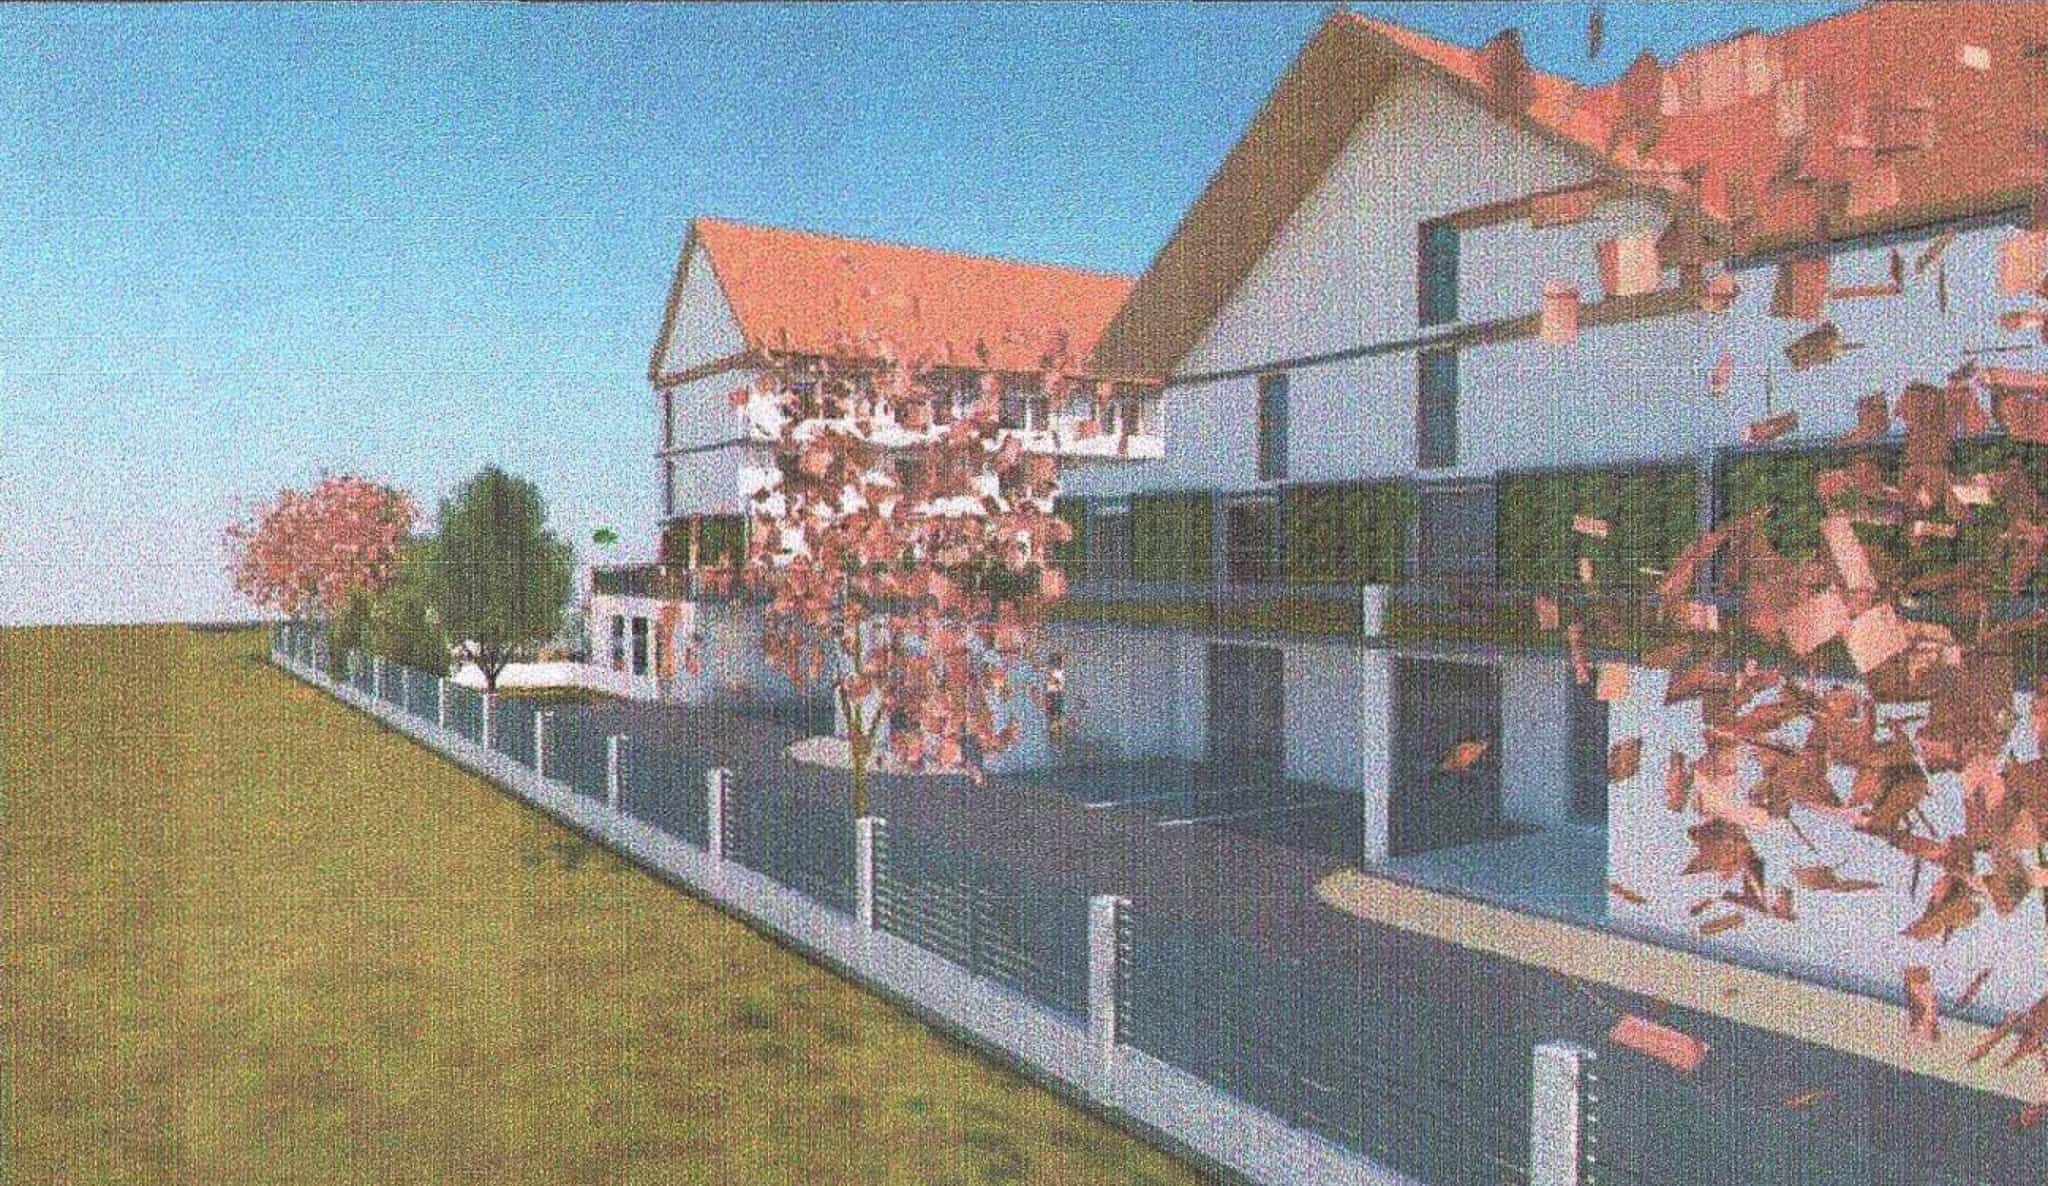 complex pentru vârstnici construit lângă lacul binder. va avea spații de cazare, cabinet medical și zone de recuperare (foto)